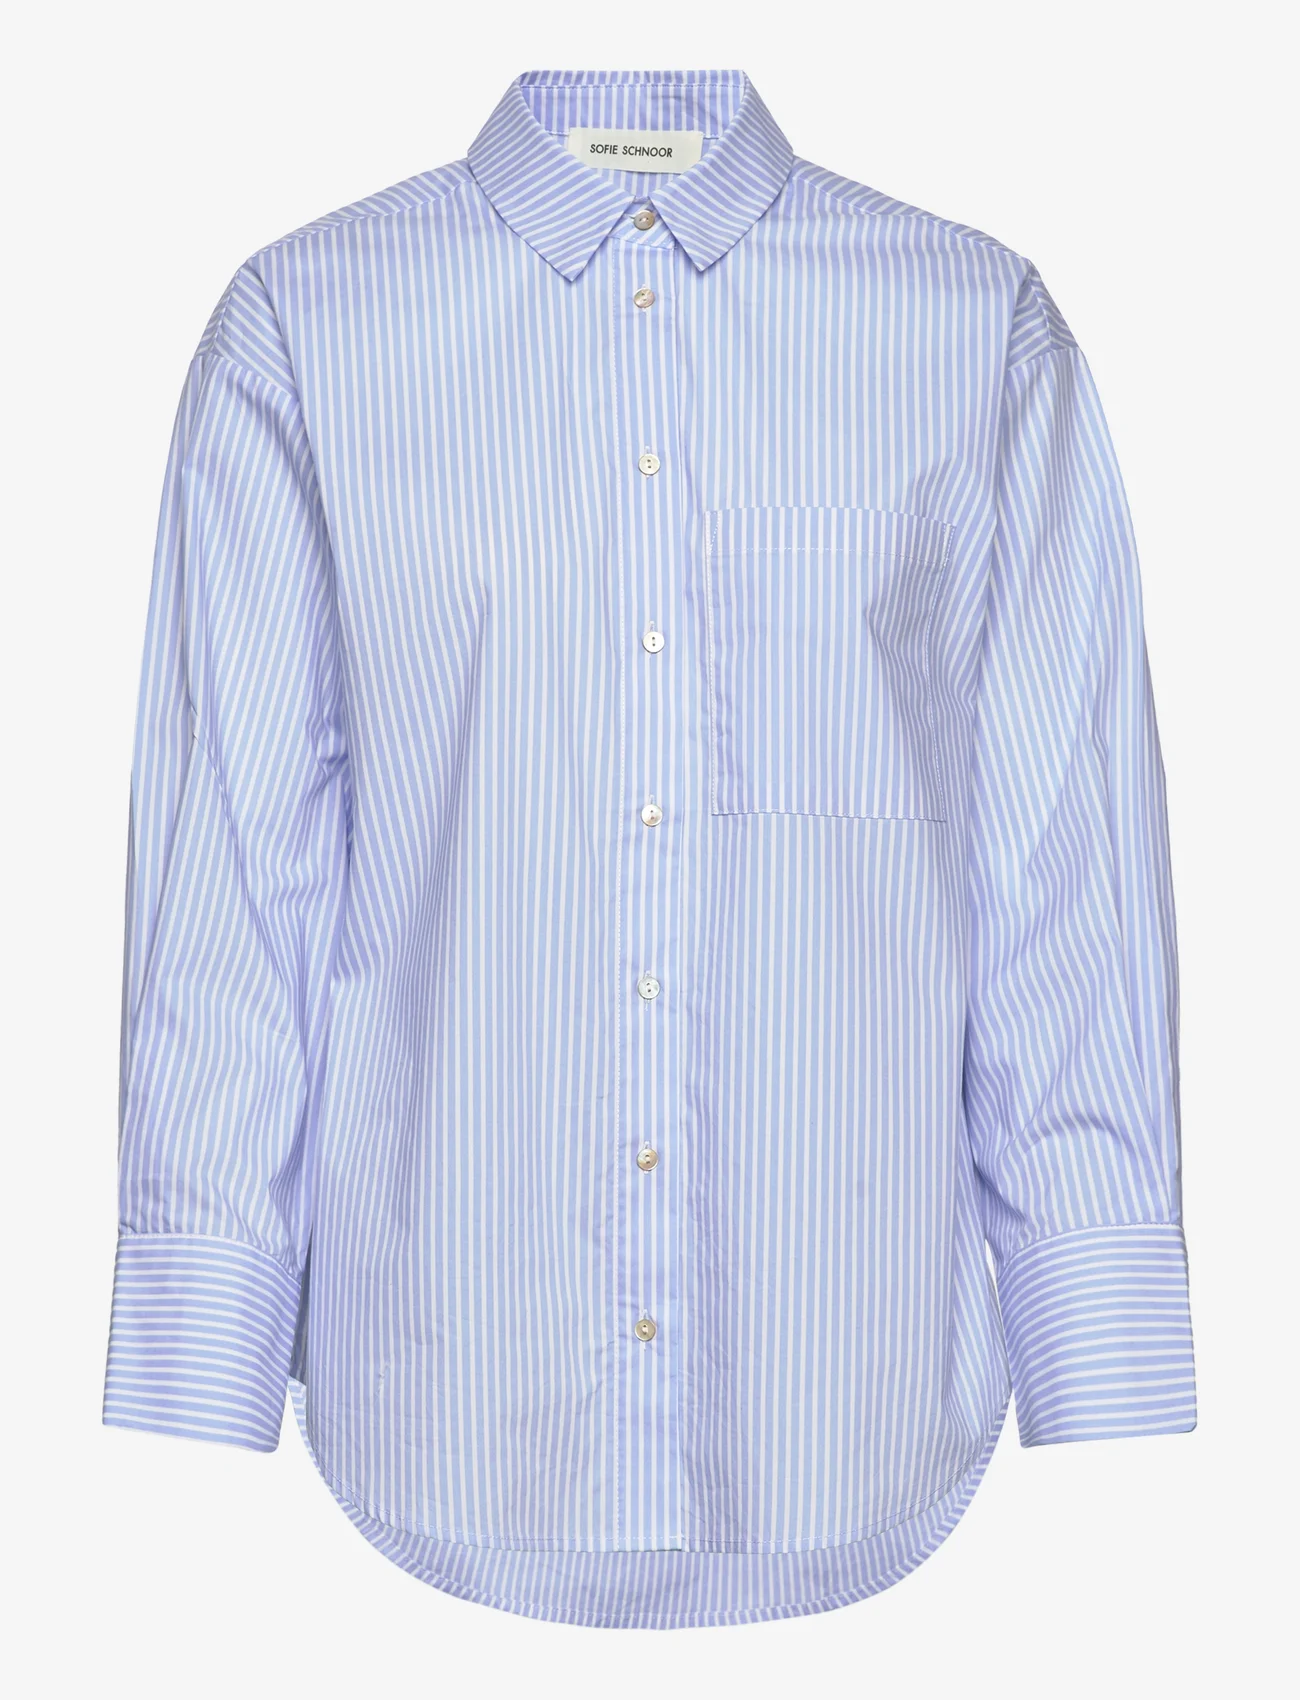 Sofie Schnoor - Shirt - marškiniai ilgomis rankovėmis - light blue striped - 0